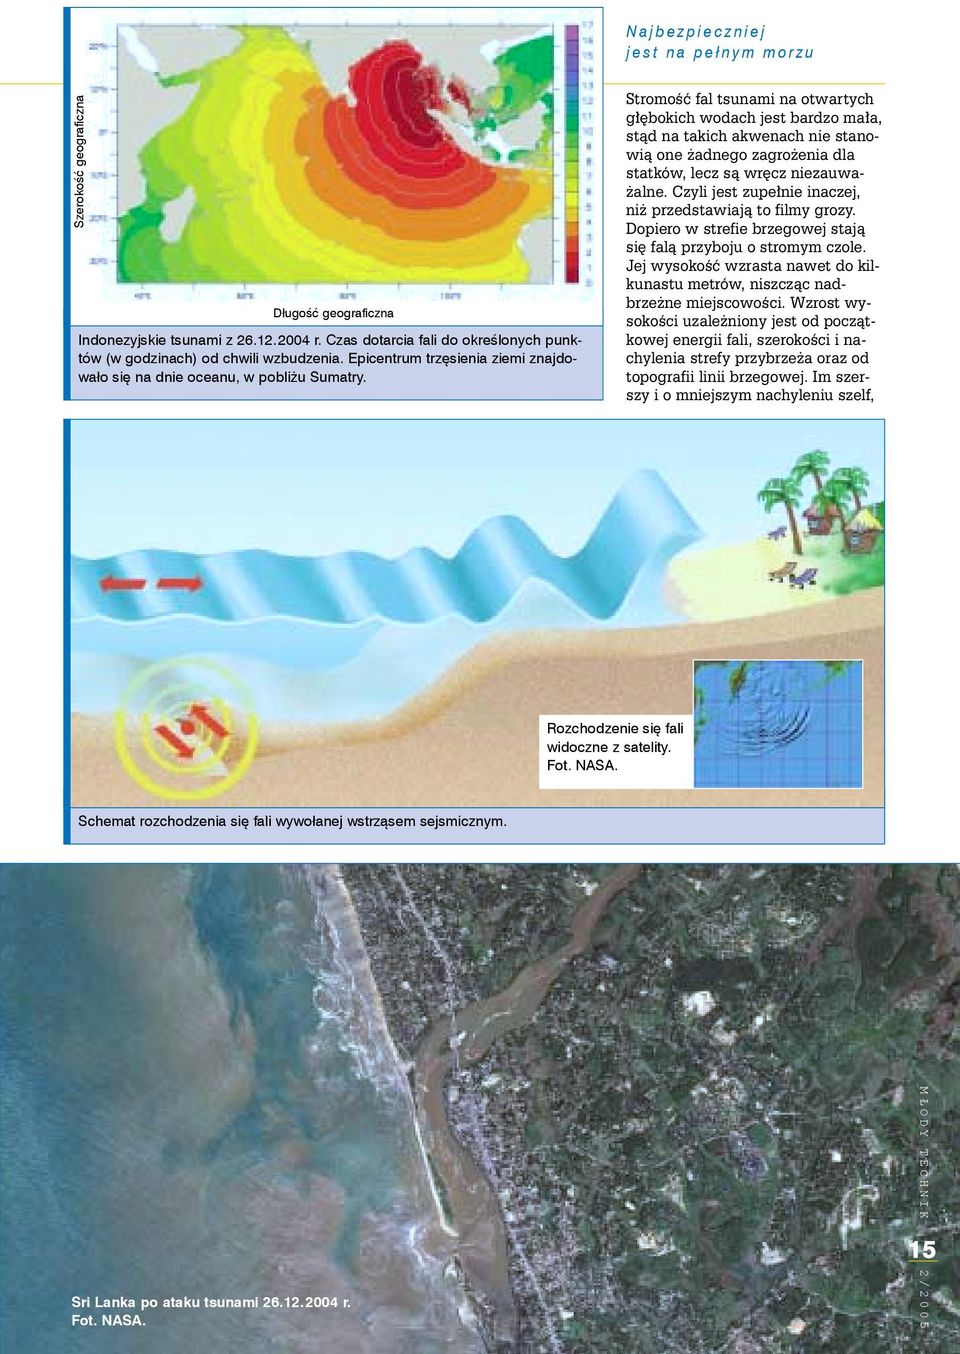 Stromoœæ fal tsunami na otwartych g³êbokich wodach jest bardzo ma³a, st¹d na takich akwenach nie stanowi¹ one adnego zagro enia dla statków, lecz s¹ wrêcz niezauwa- alne.